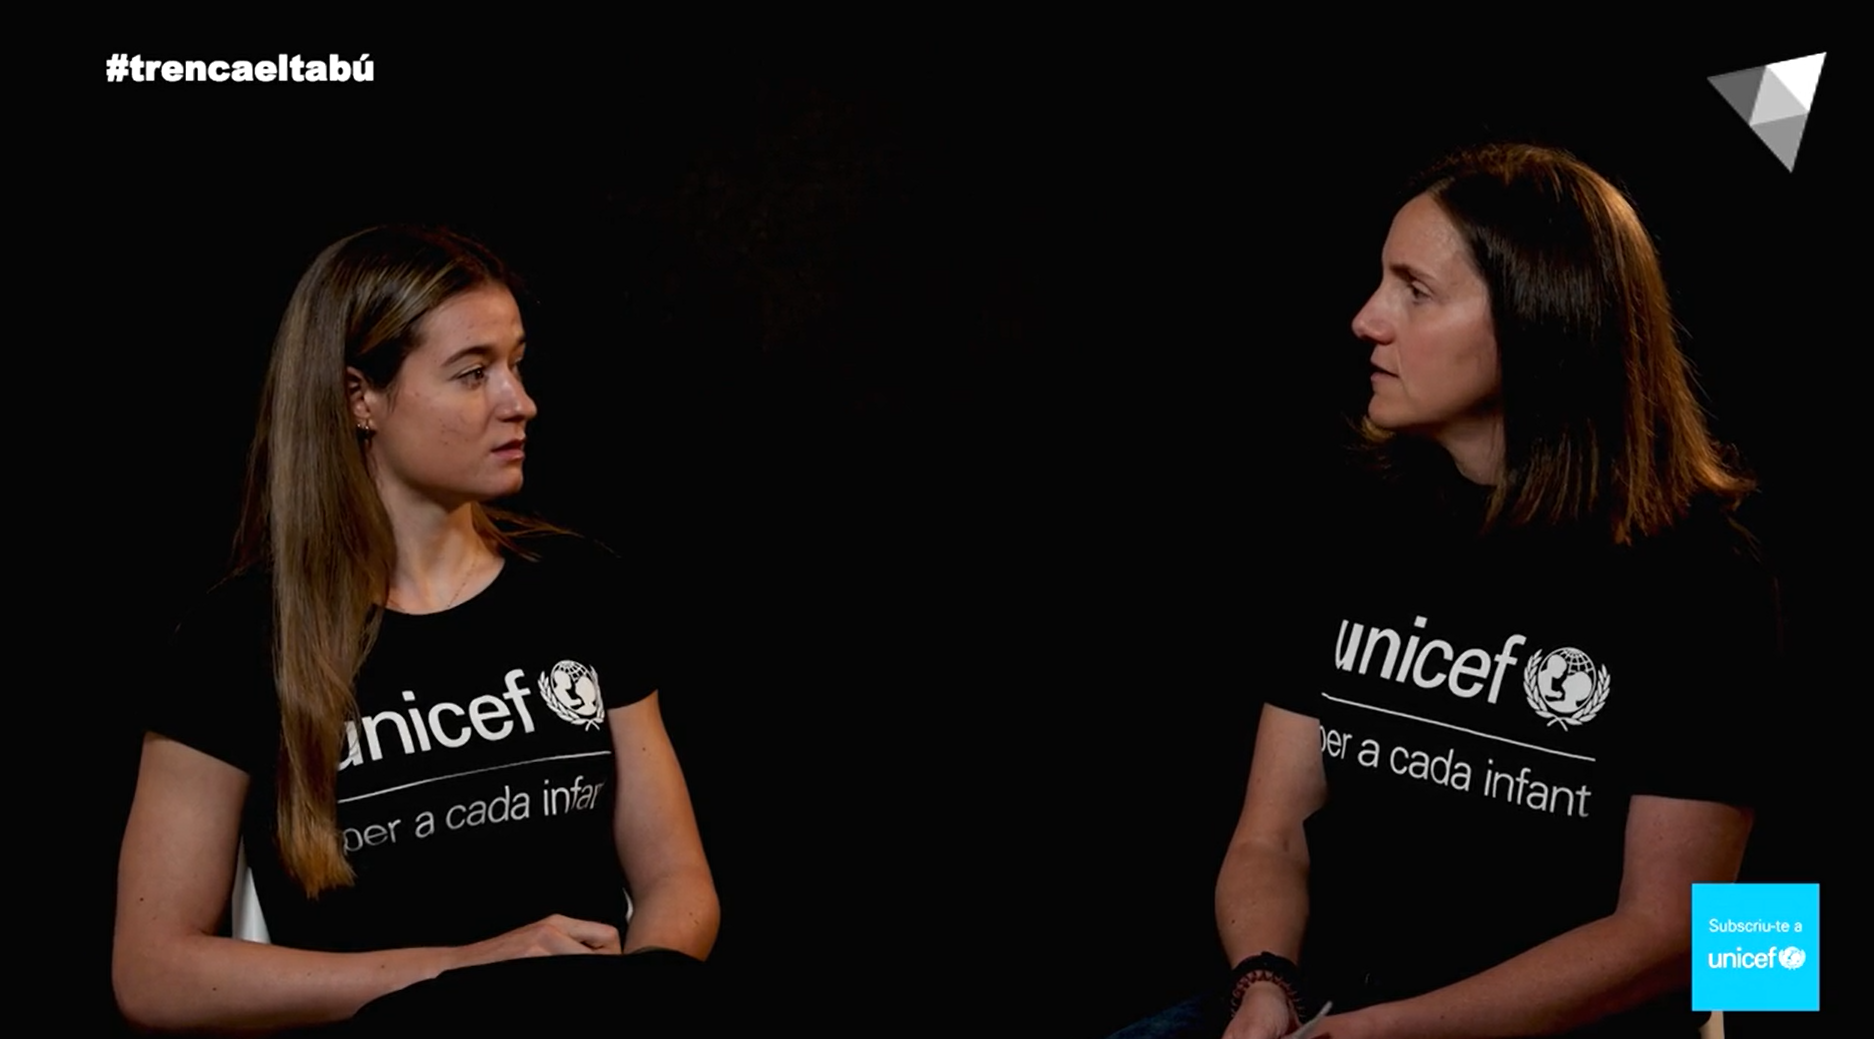 UNICEF - Setmana europea d'Unicef: "La salut mental"